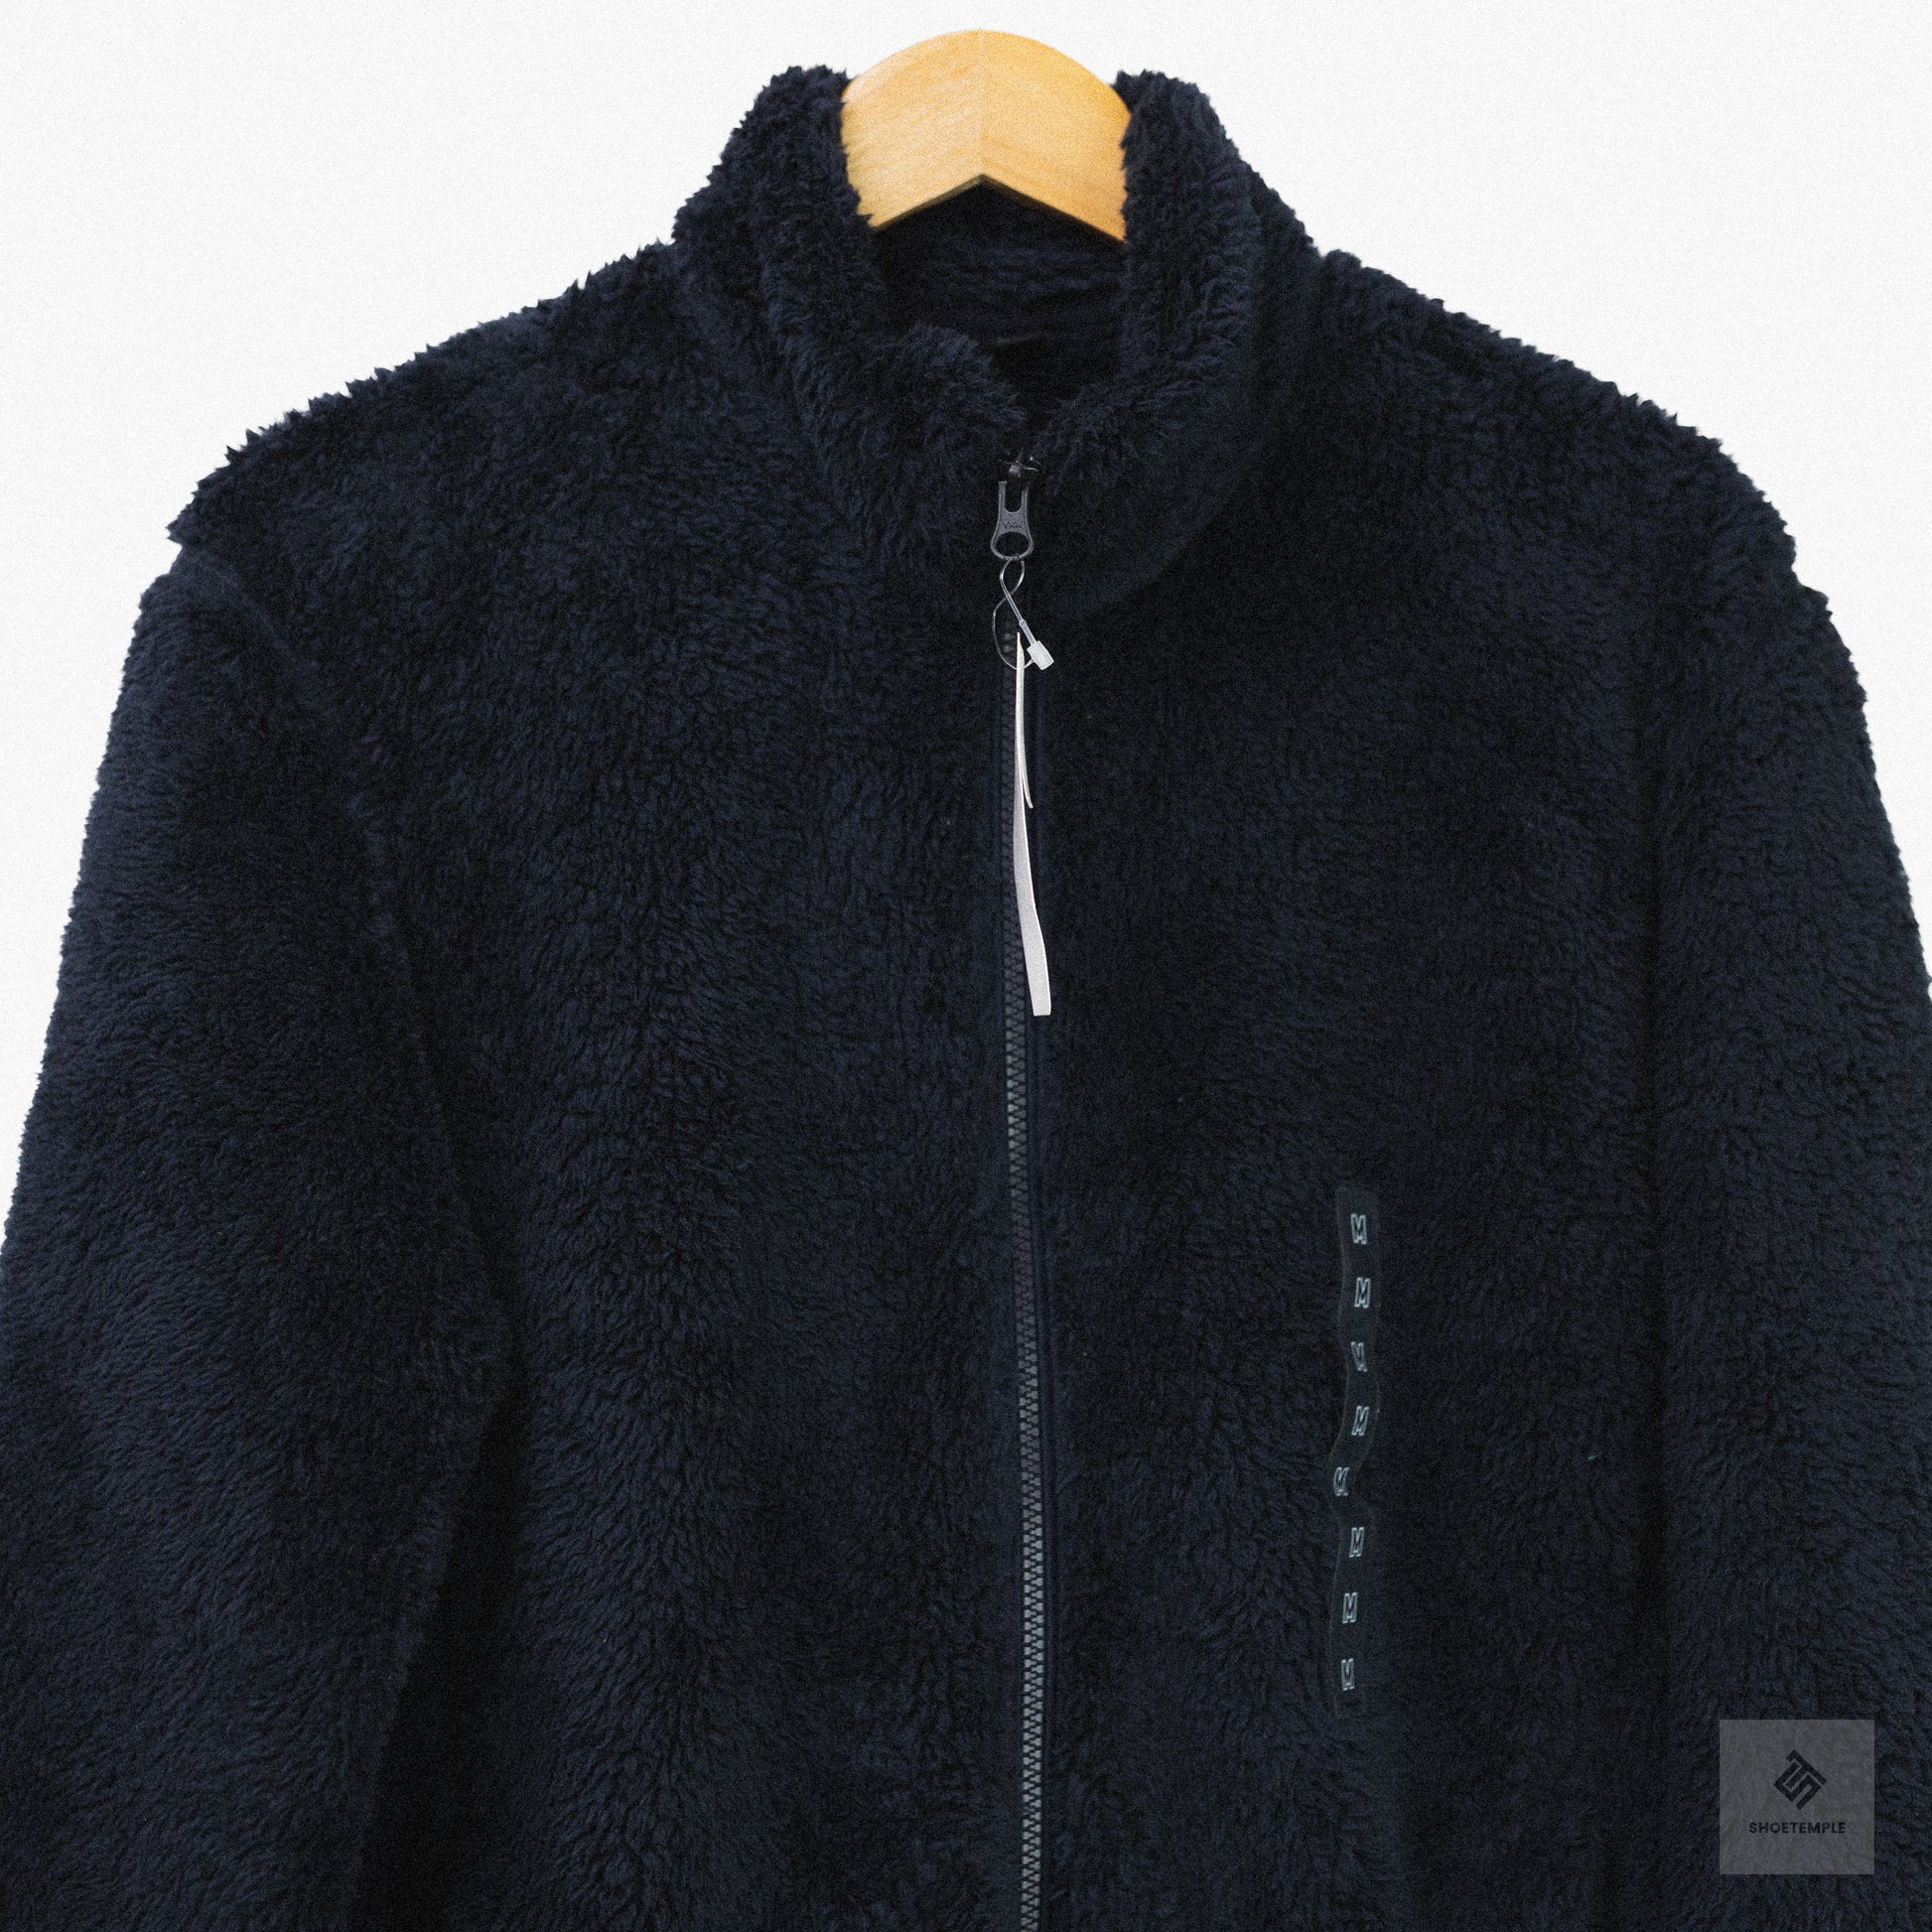 Uniqlo Fluffy Yarn Fleece Full-Zip Jacket in Black